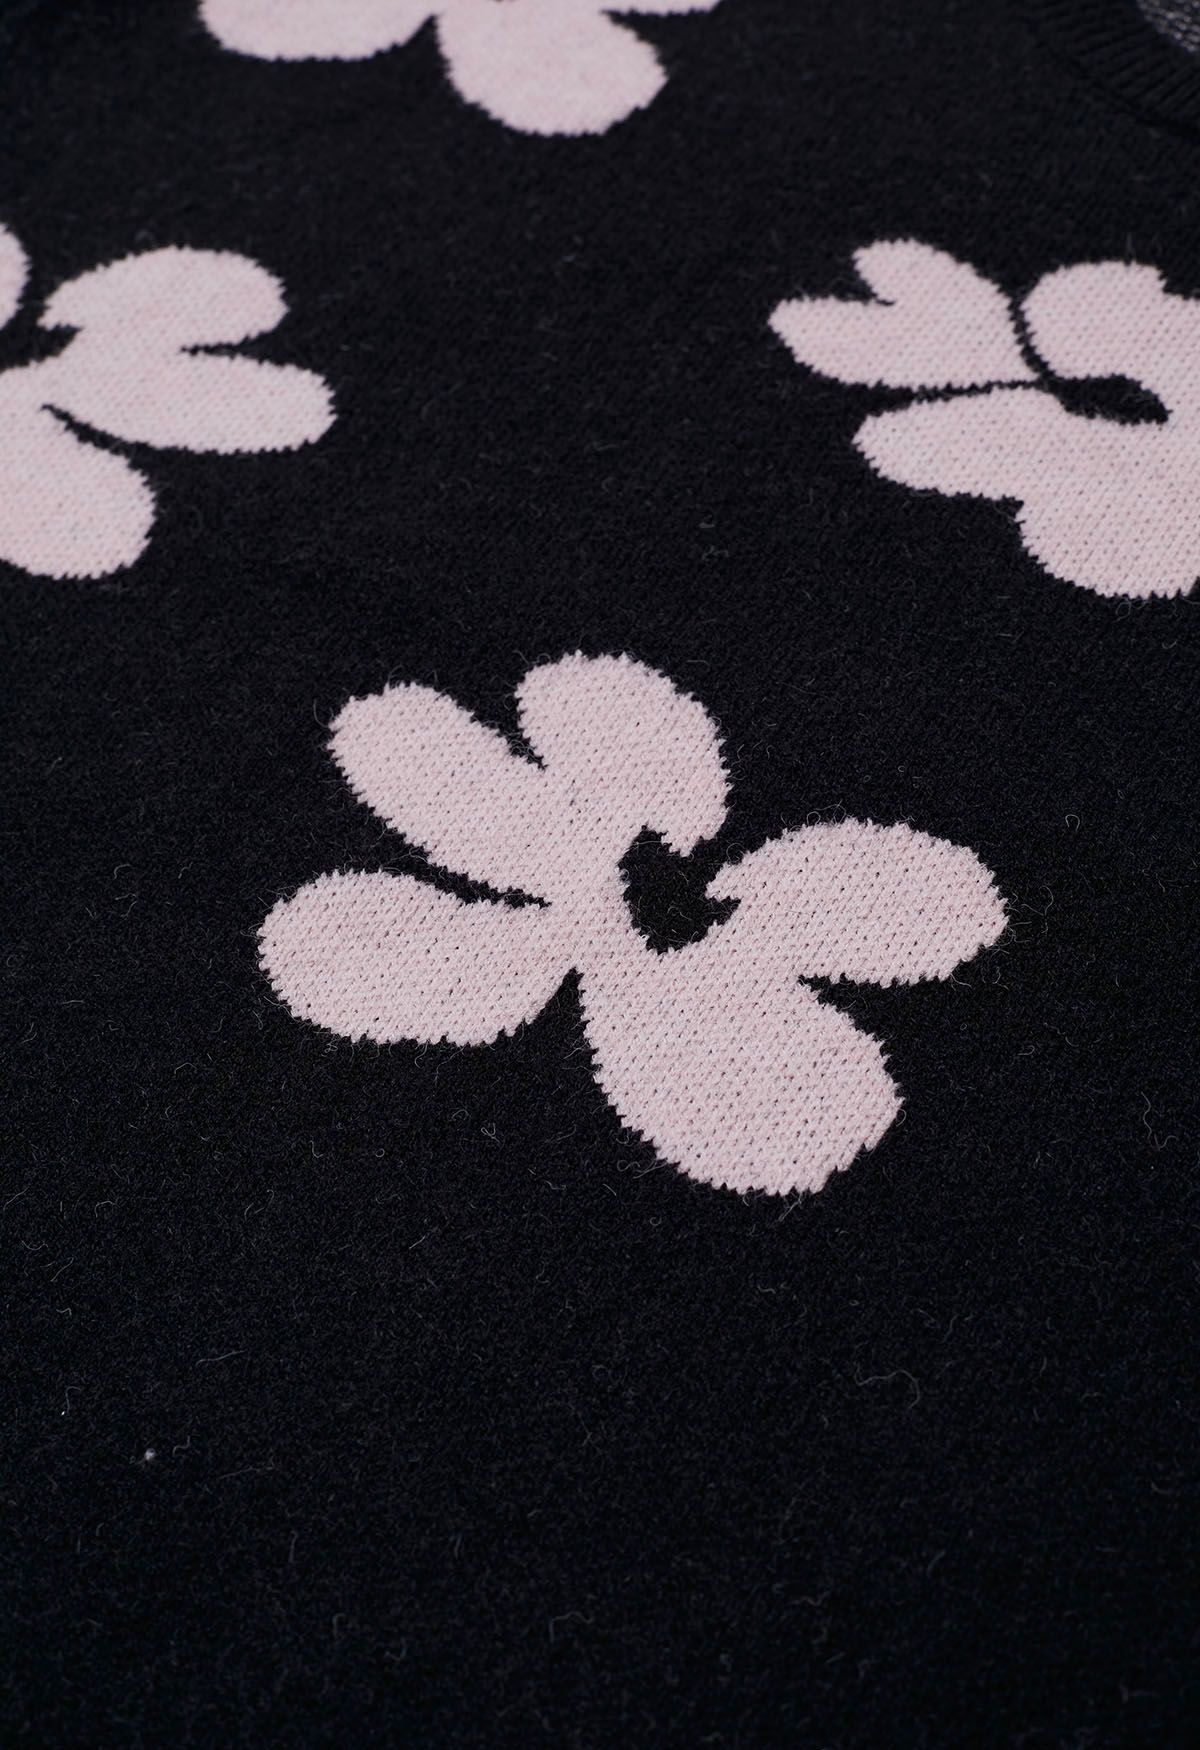 Suéter de punto con estampado de flores en contraste en negro